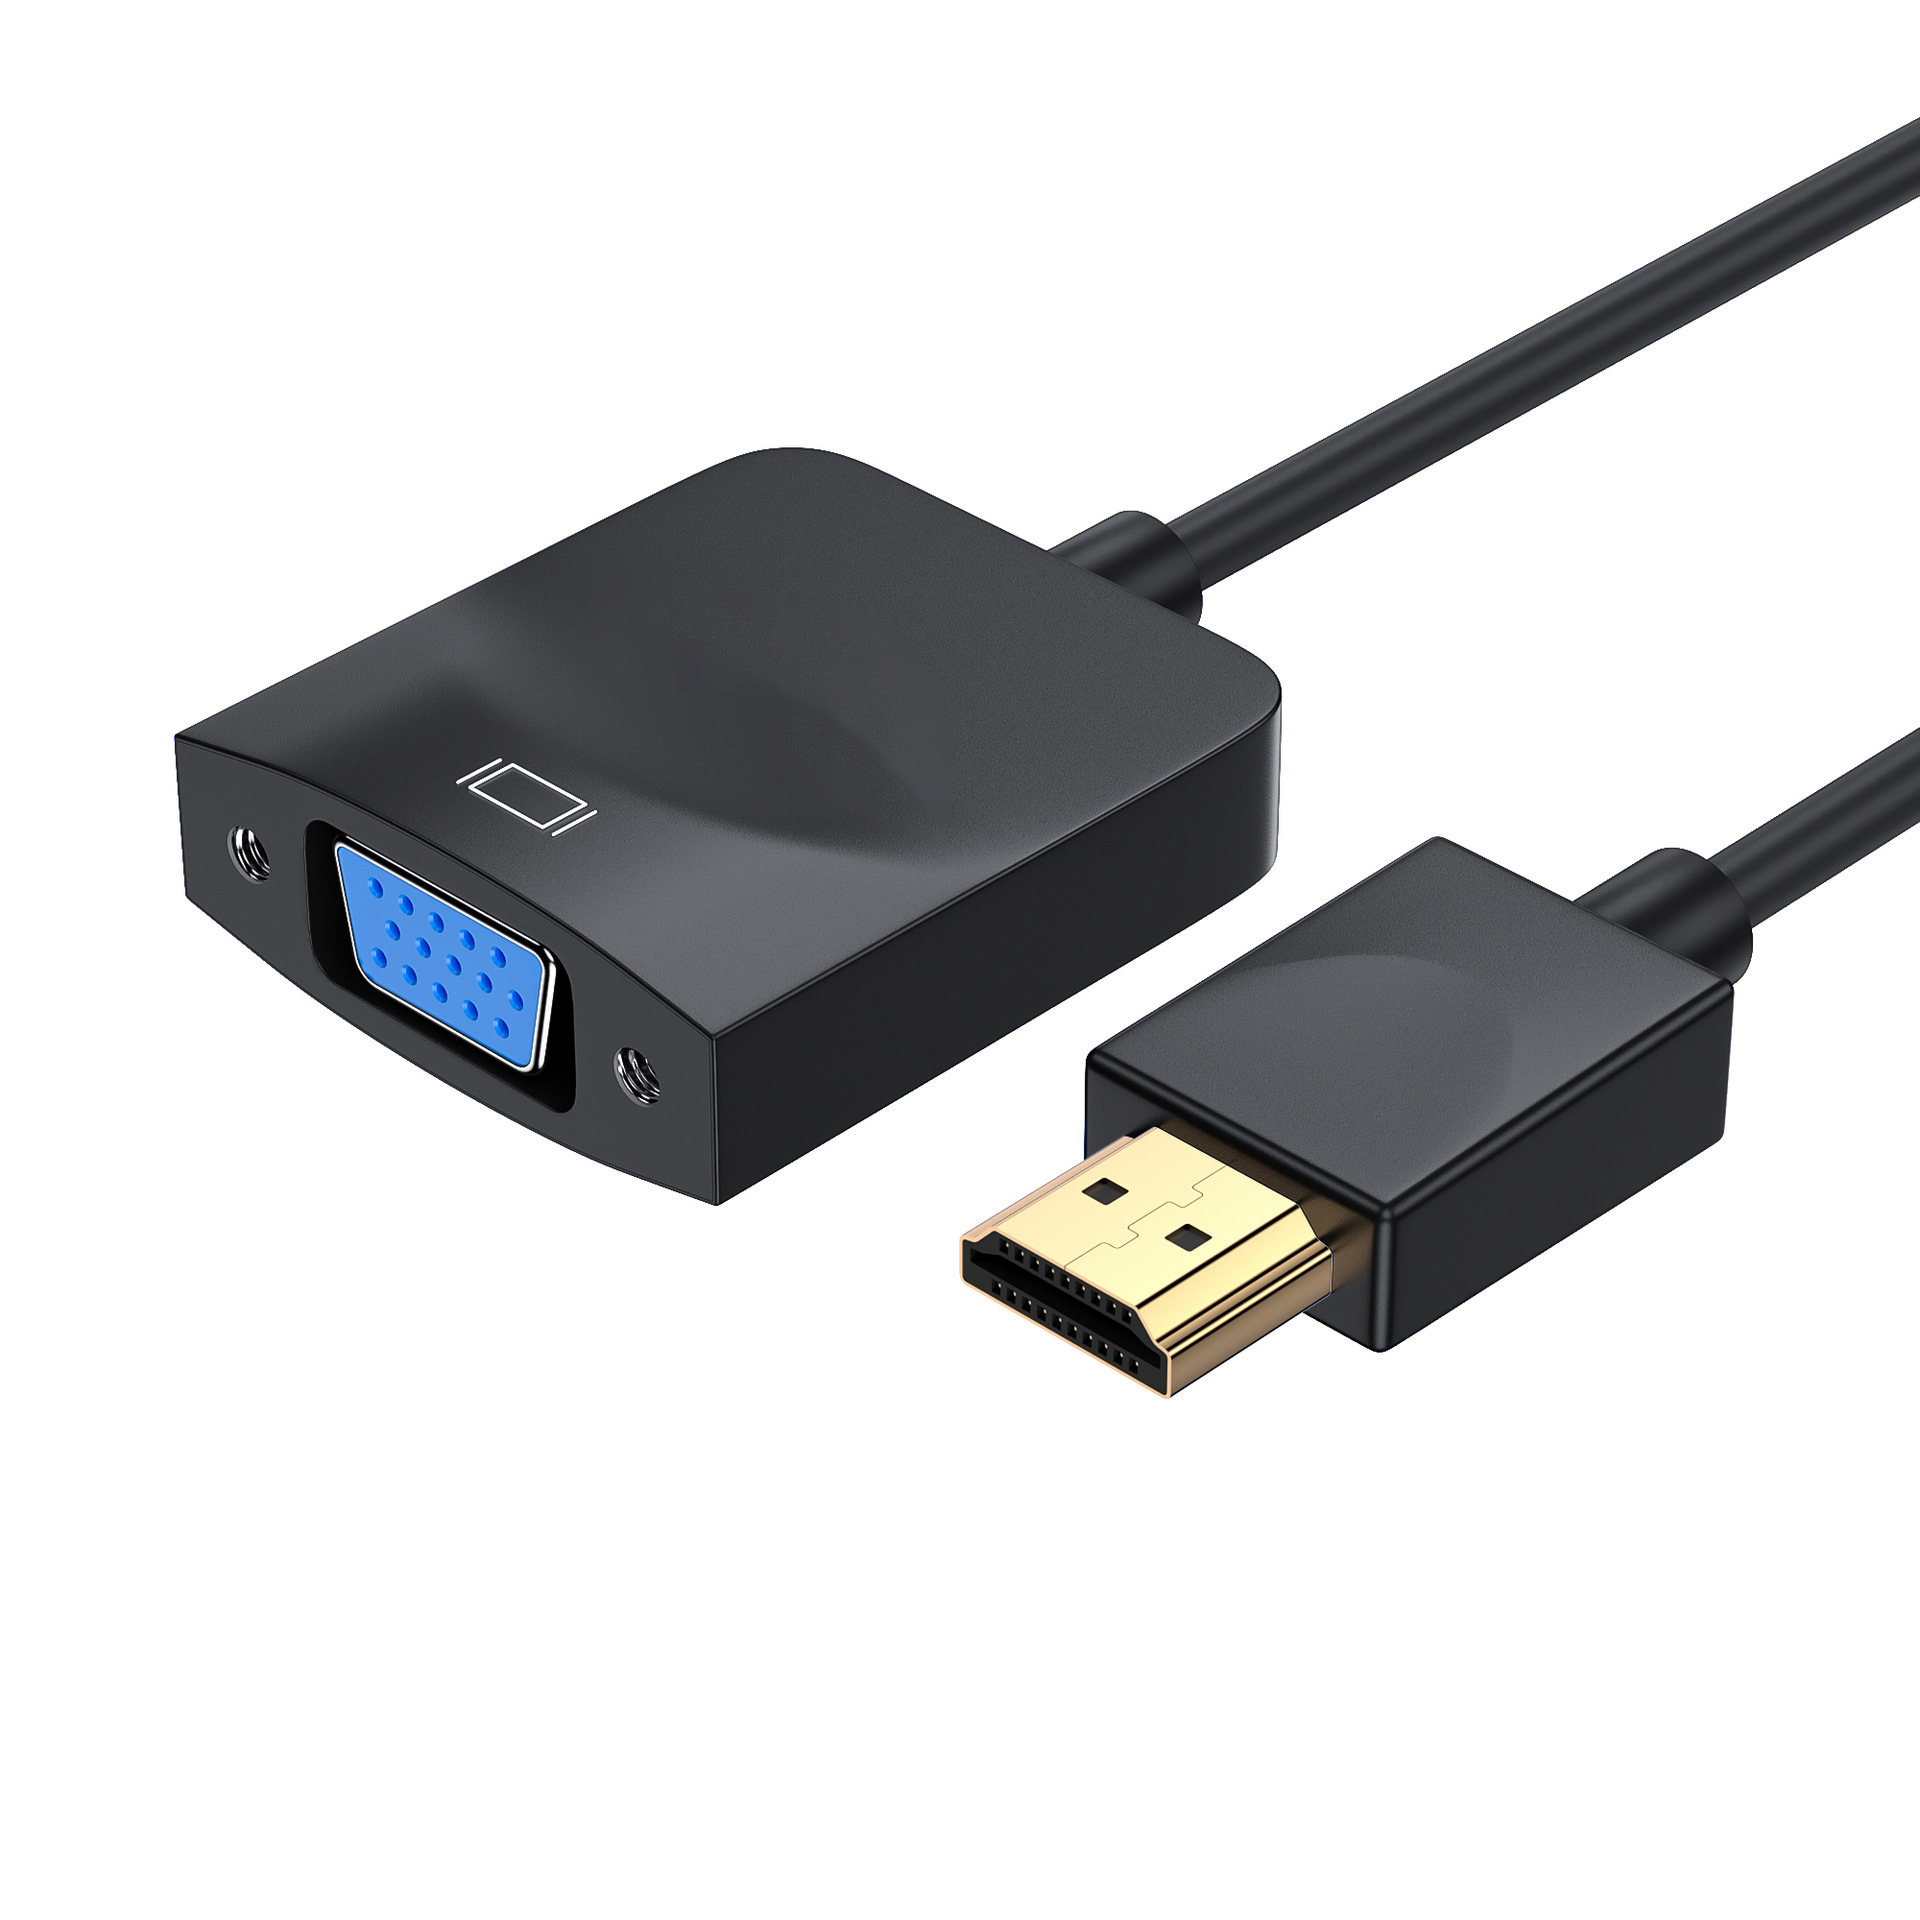 HDMI sang VGA có nguồn điện chuyển đổi âm thanh máy tính kết nối hộp giải mã tín hiệu truyền hình cáp chuyển đổi màn hình TV